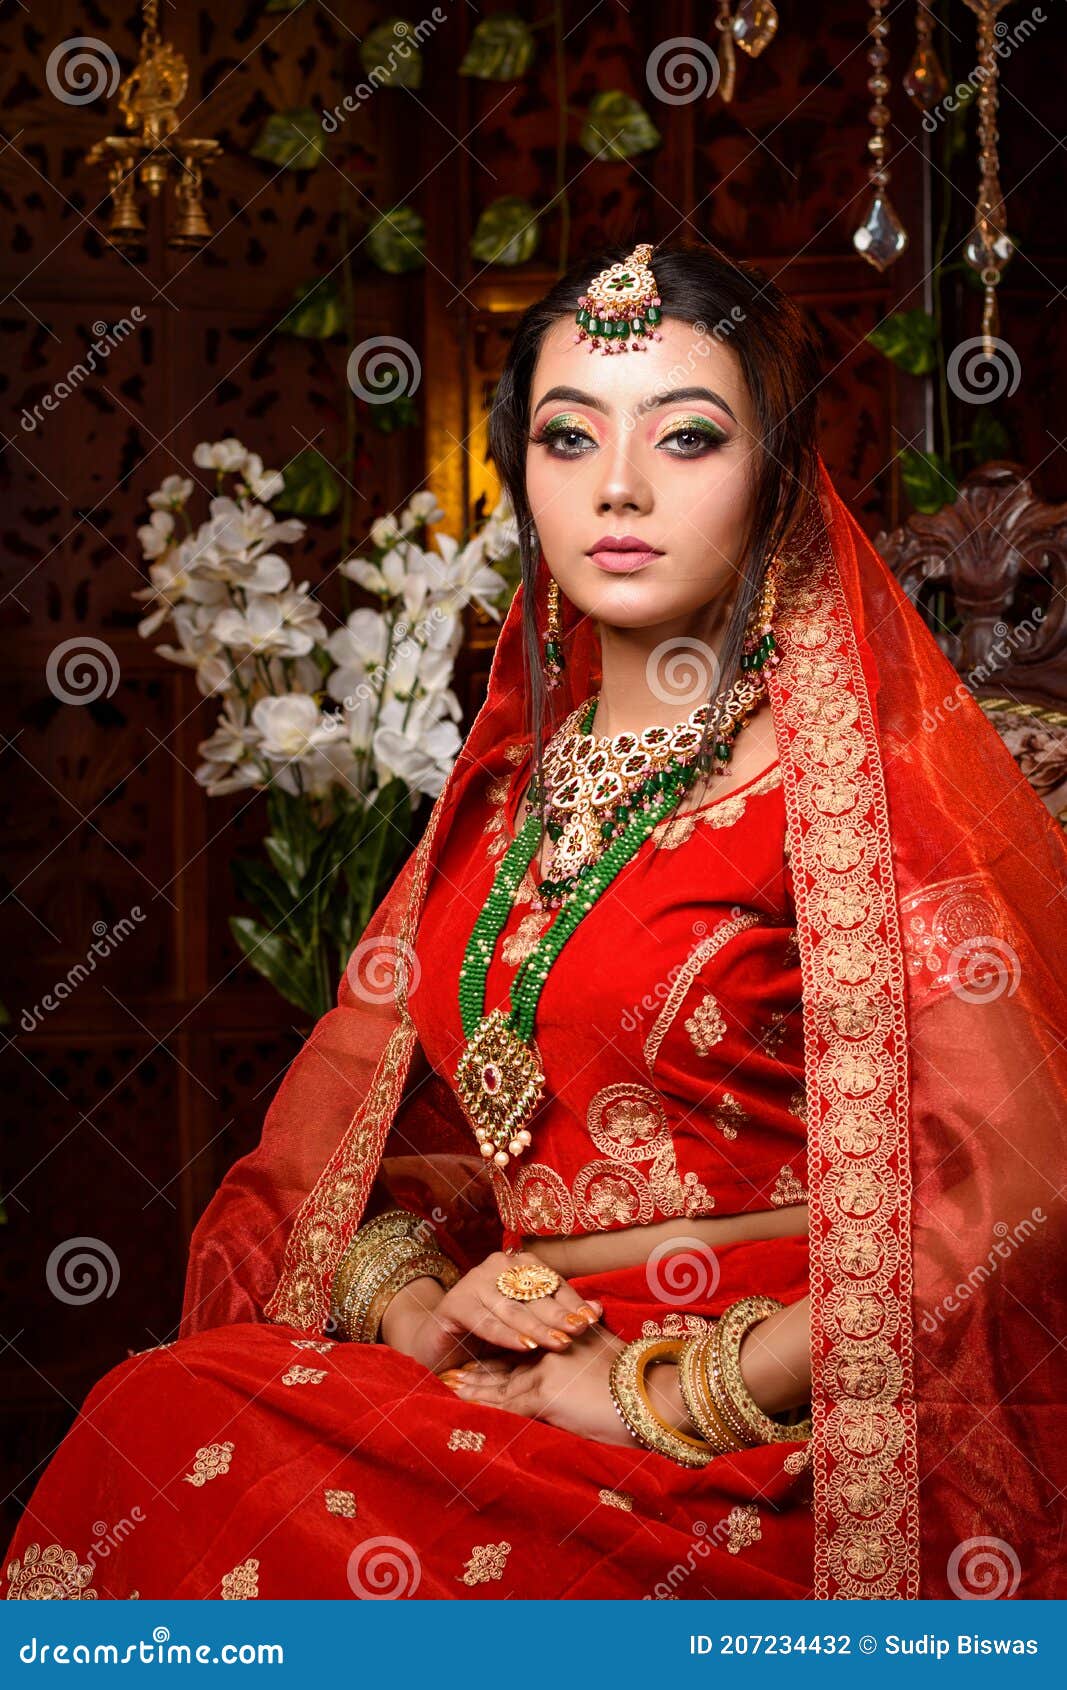 Hot Indian Bride Pics